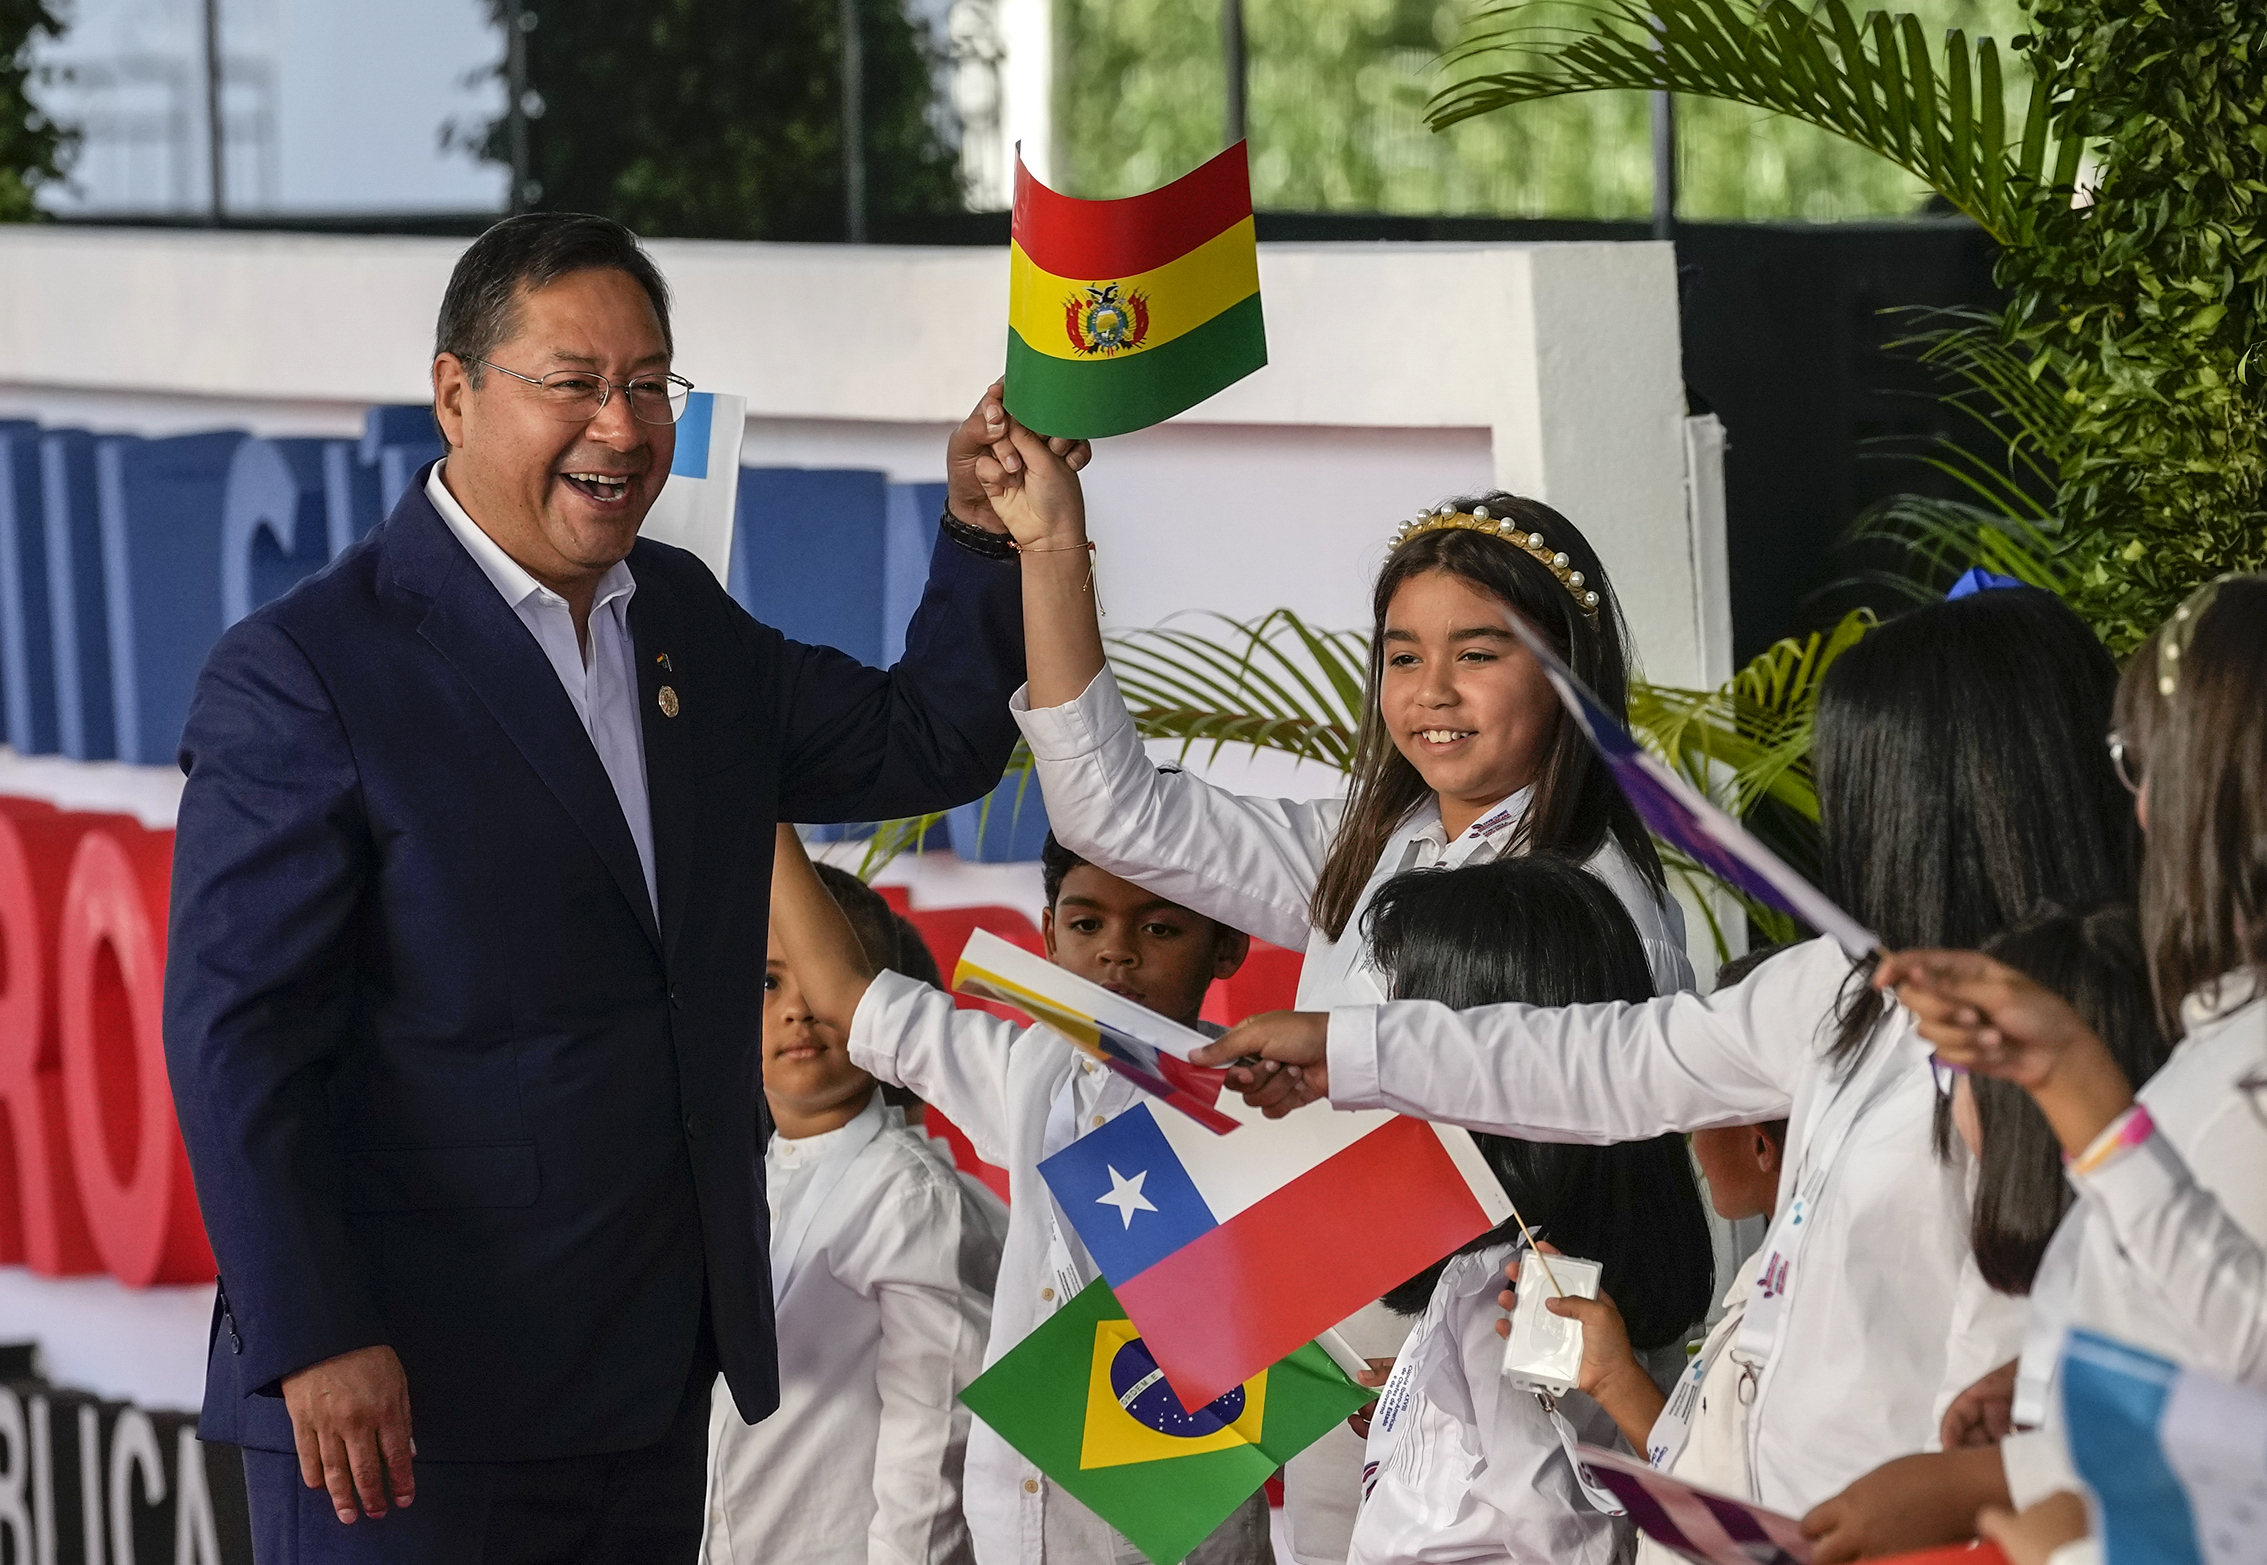 El presidente de Bolivia, Luis Arce, saluda a los niños a su llegada a la sesión de la 28ª Cumbre Iberoamericana, en Santo Domingo, República Dominicana, el sábado 25 de marzo de 2022. (Foto AP/Ariana Cubillos)